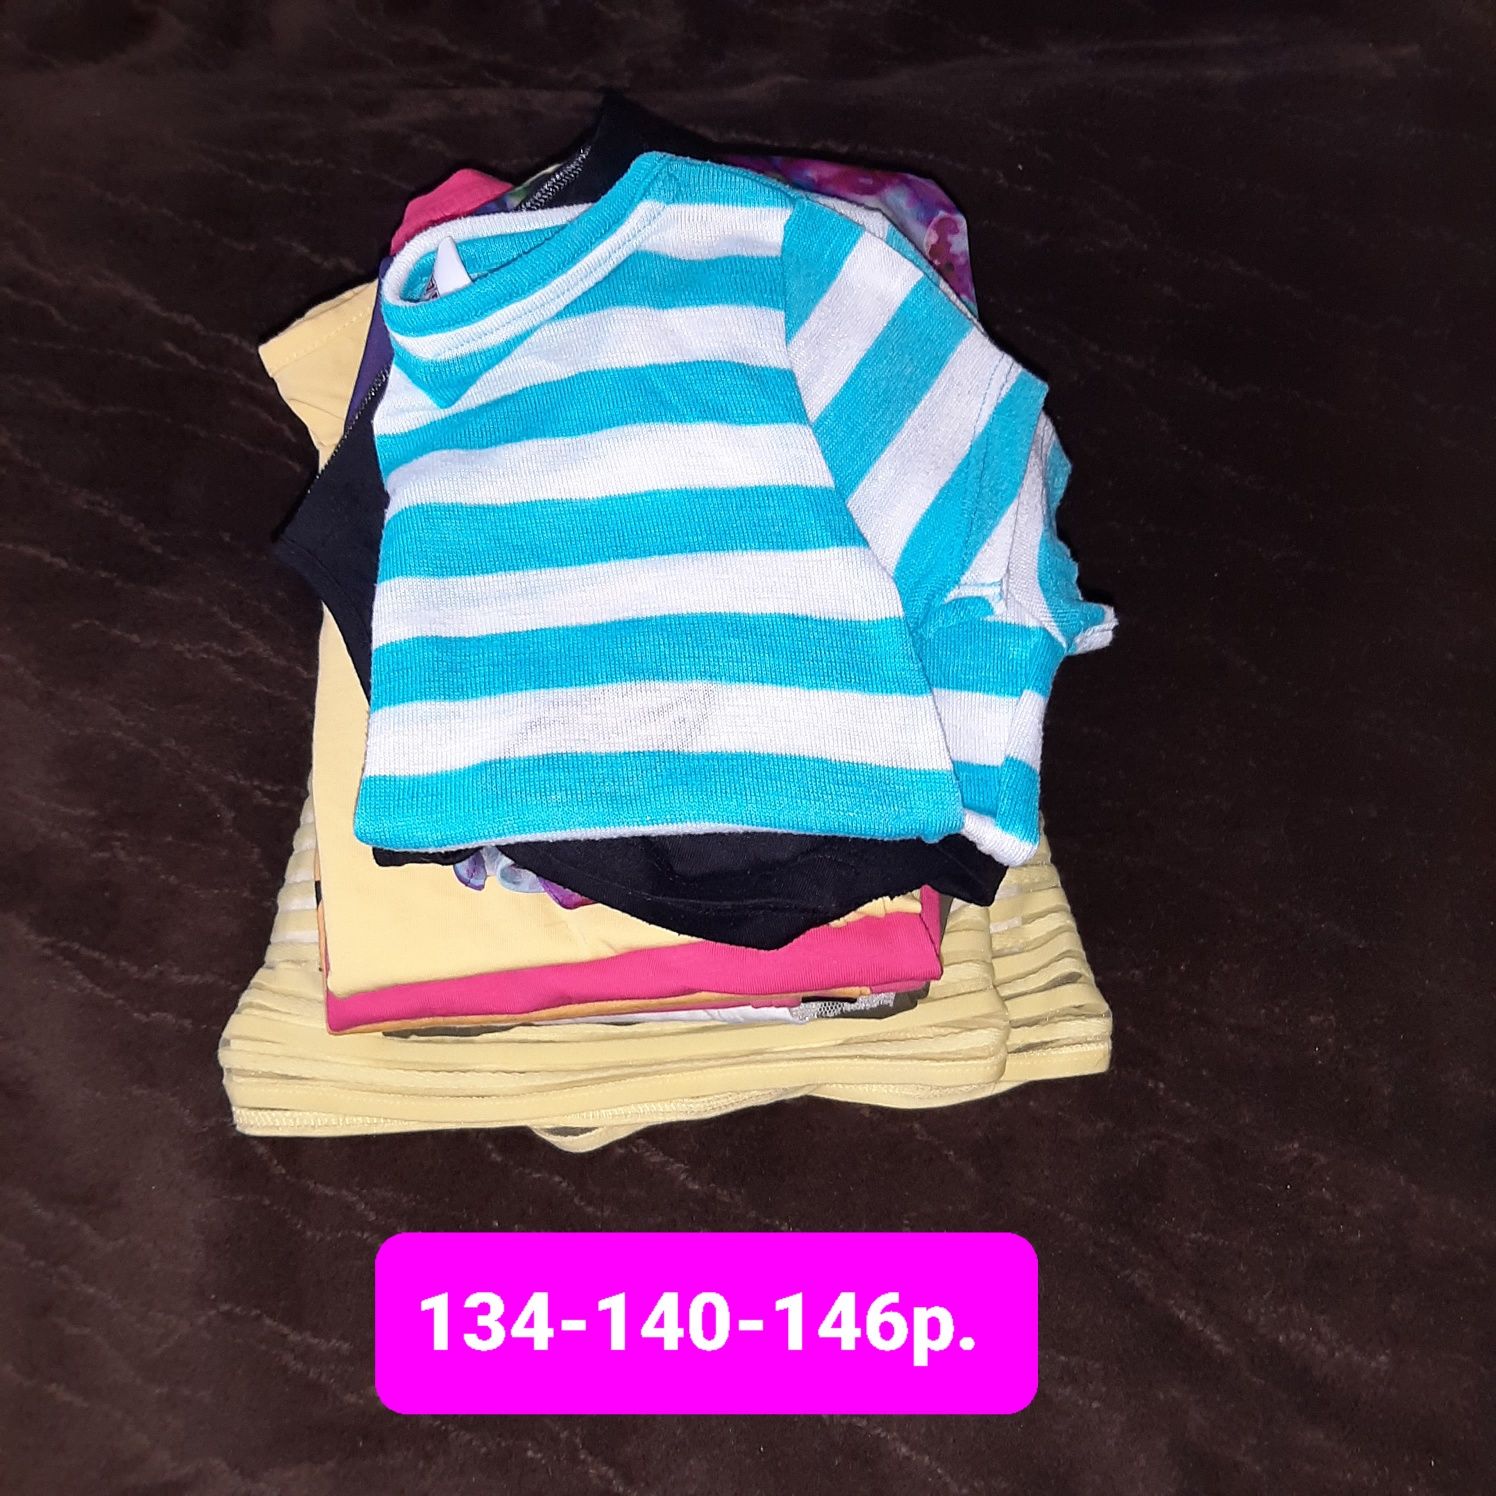 Пакет вещей девочке 134 140 146 см шорты юбка футболка лосины